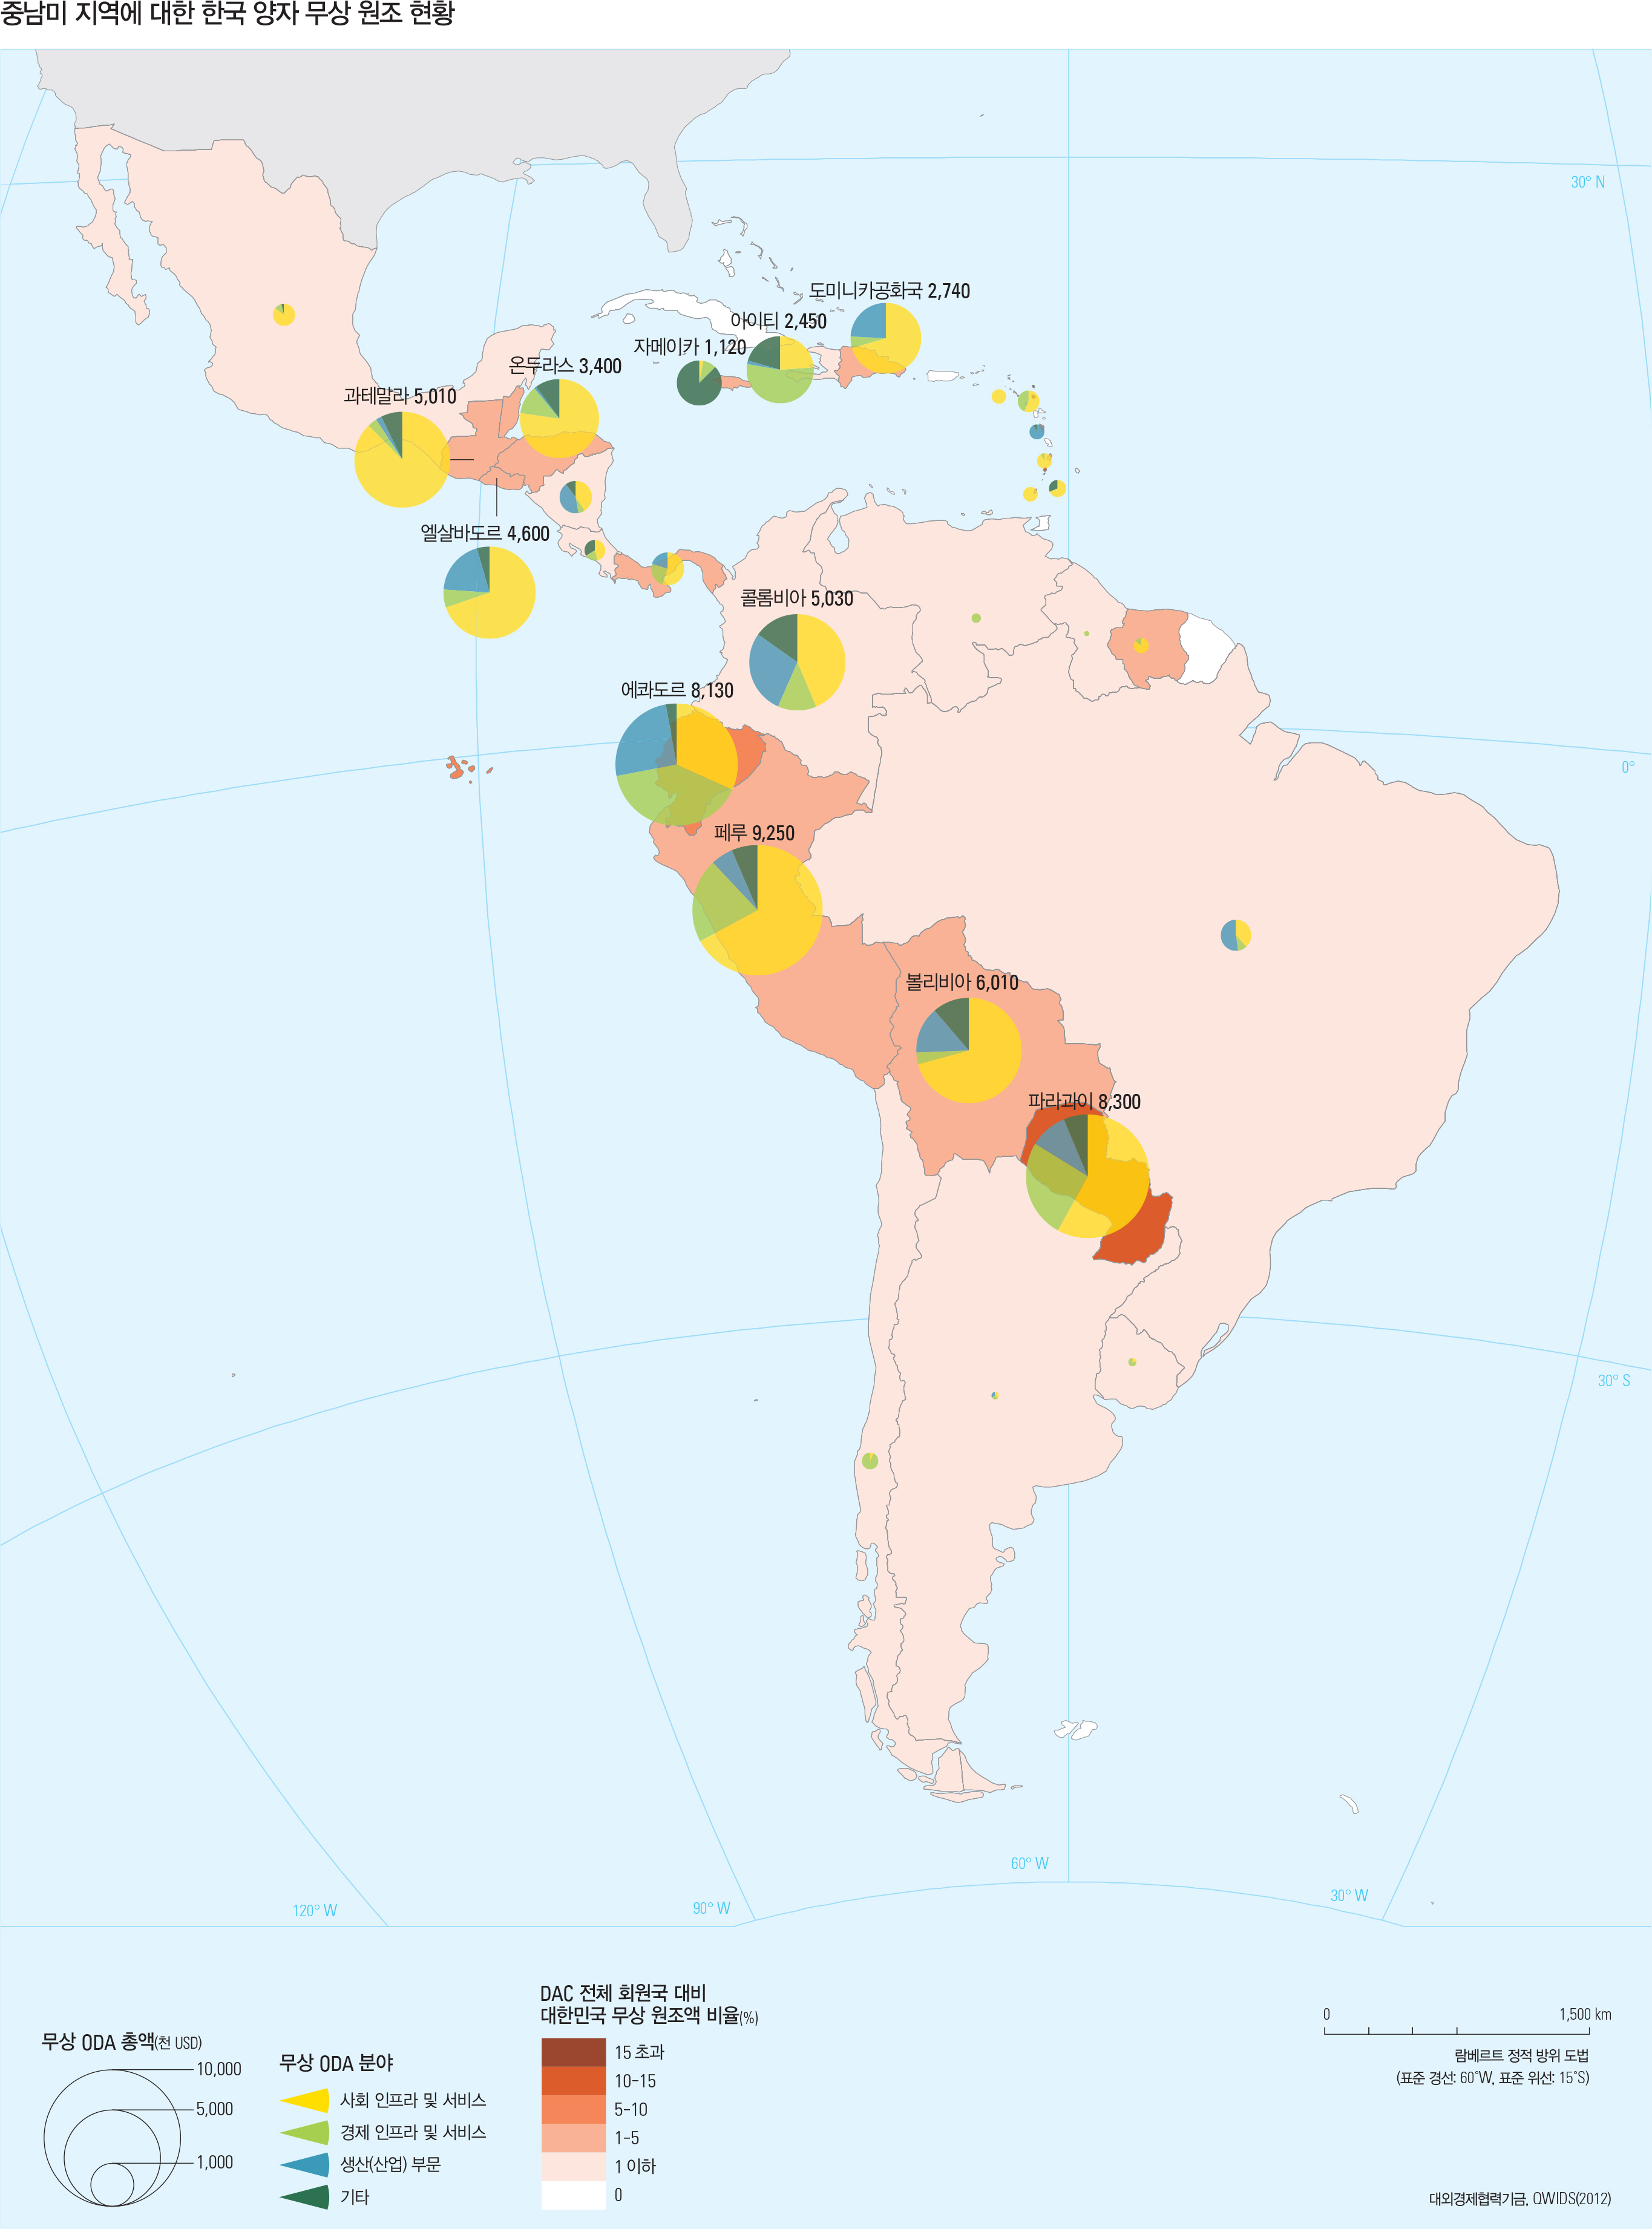 중남미 주요 국가별 한국 양자 무상 원조 추이